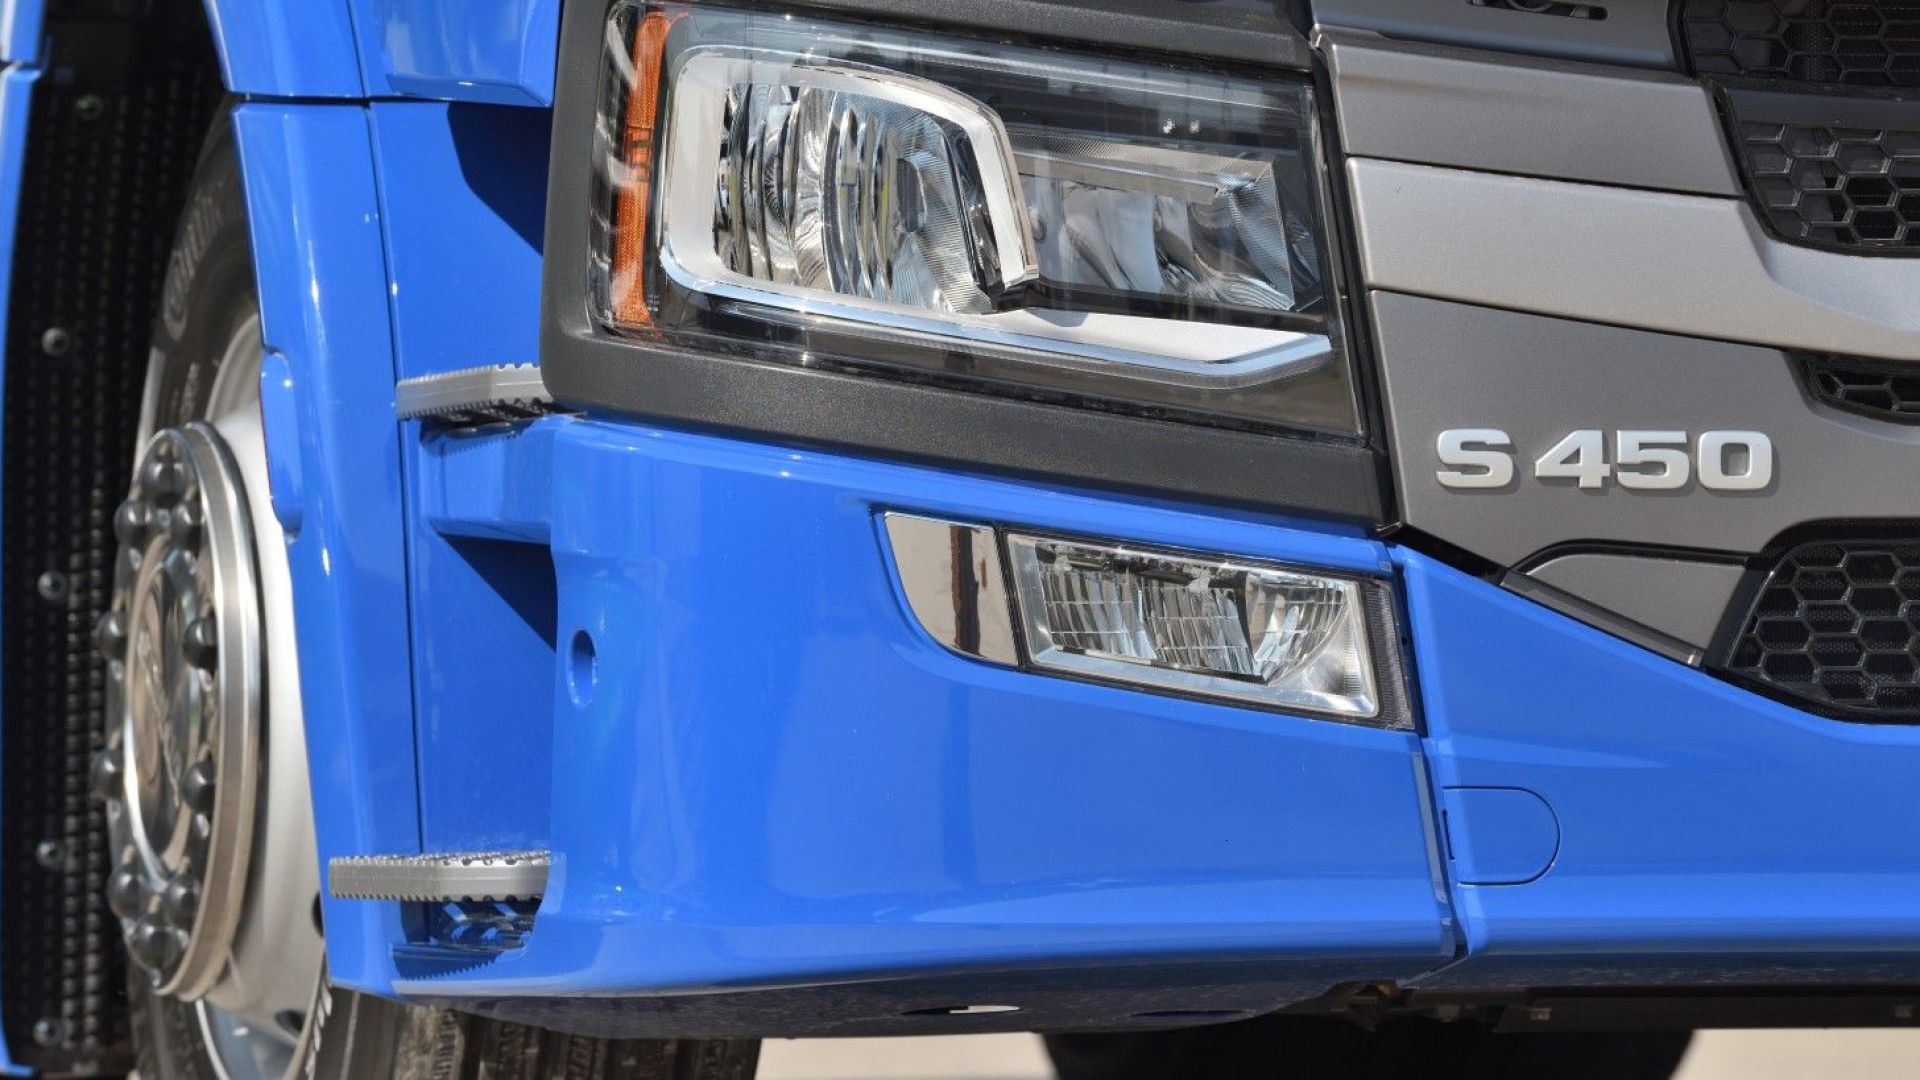 Български фирми се включиха в иск срещу производители на камиони